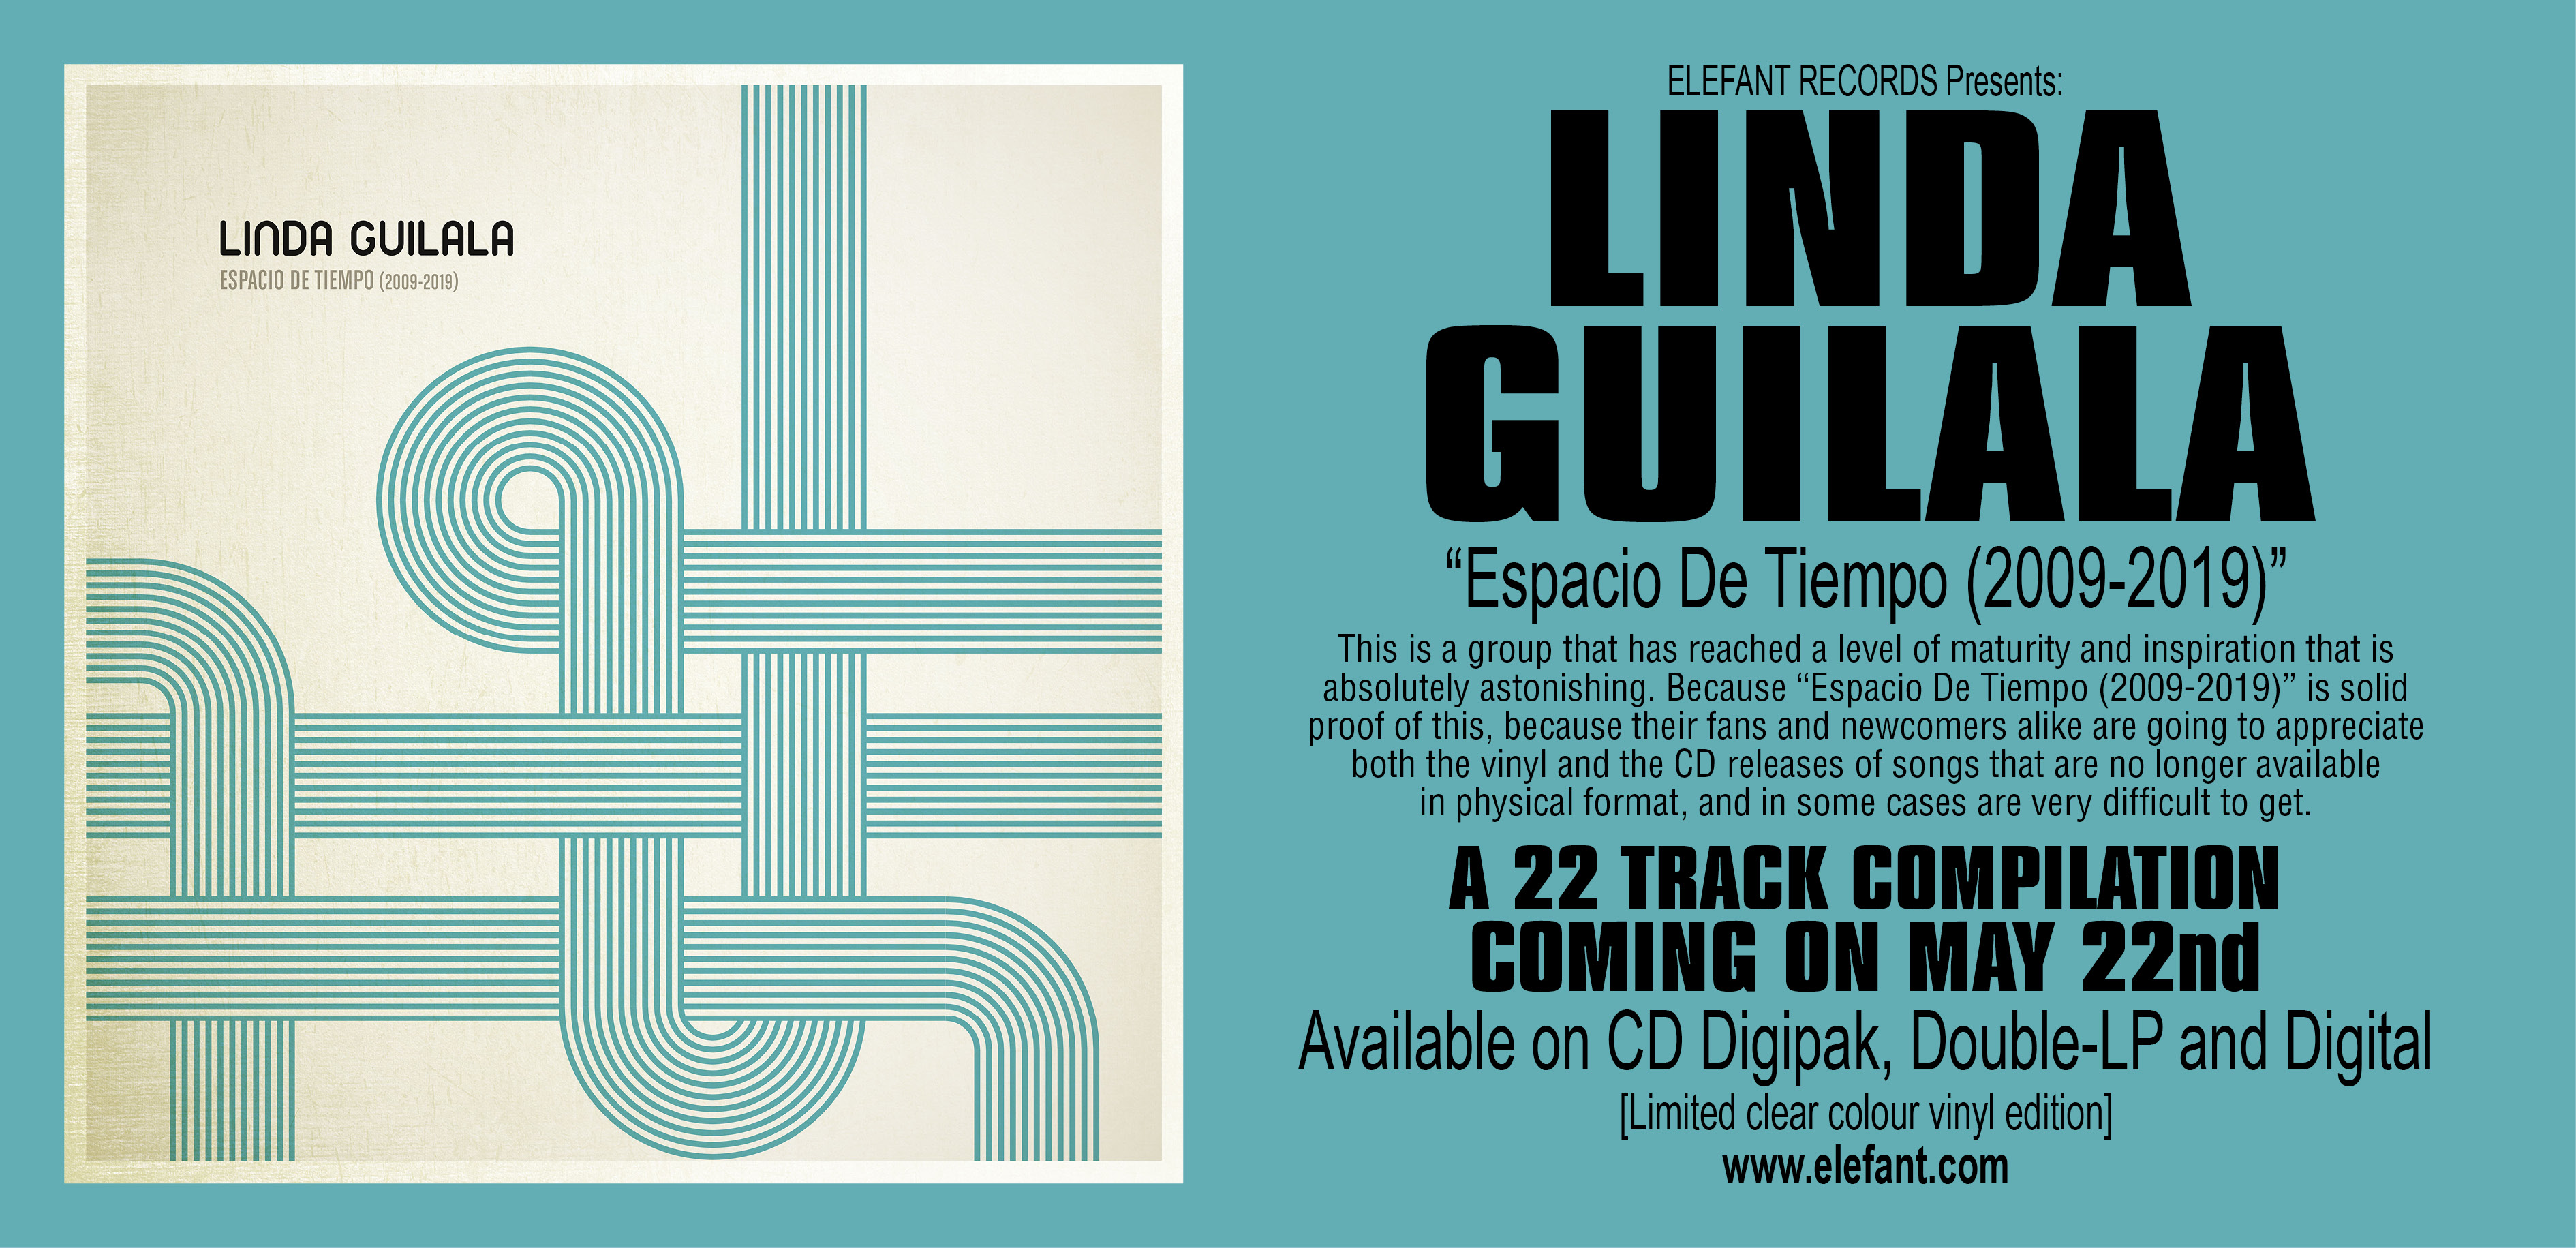 Linda Guilala "Espacio De Tiempo (2009-2019)" Double-LP